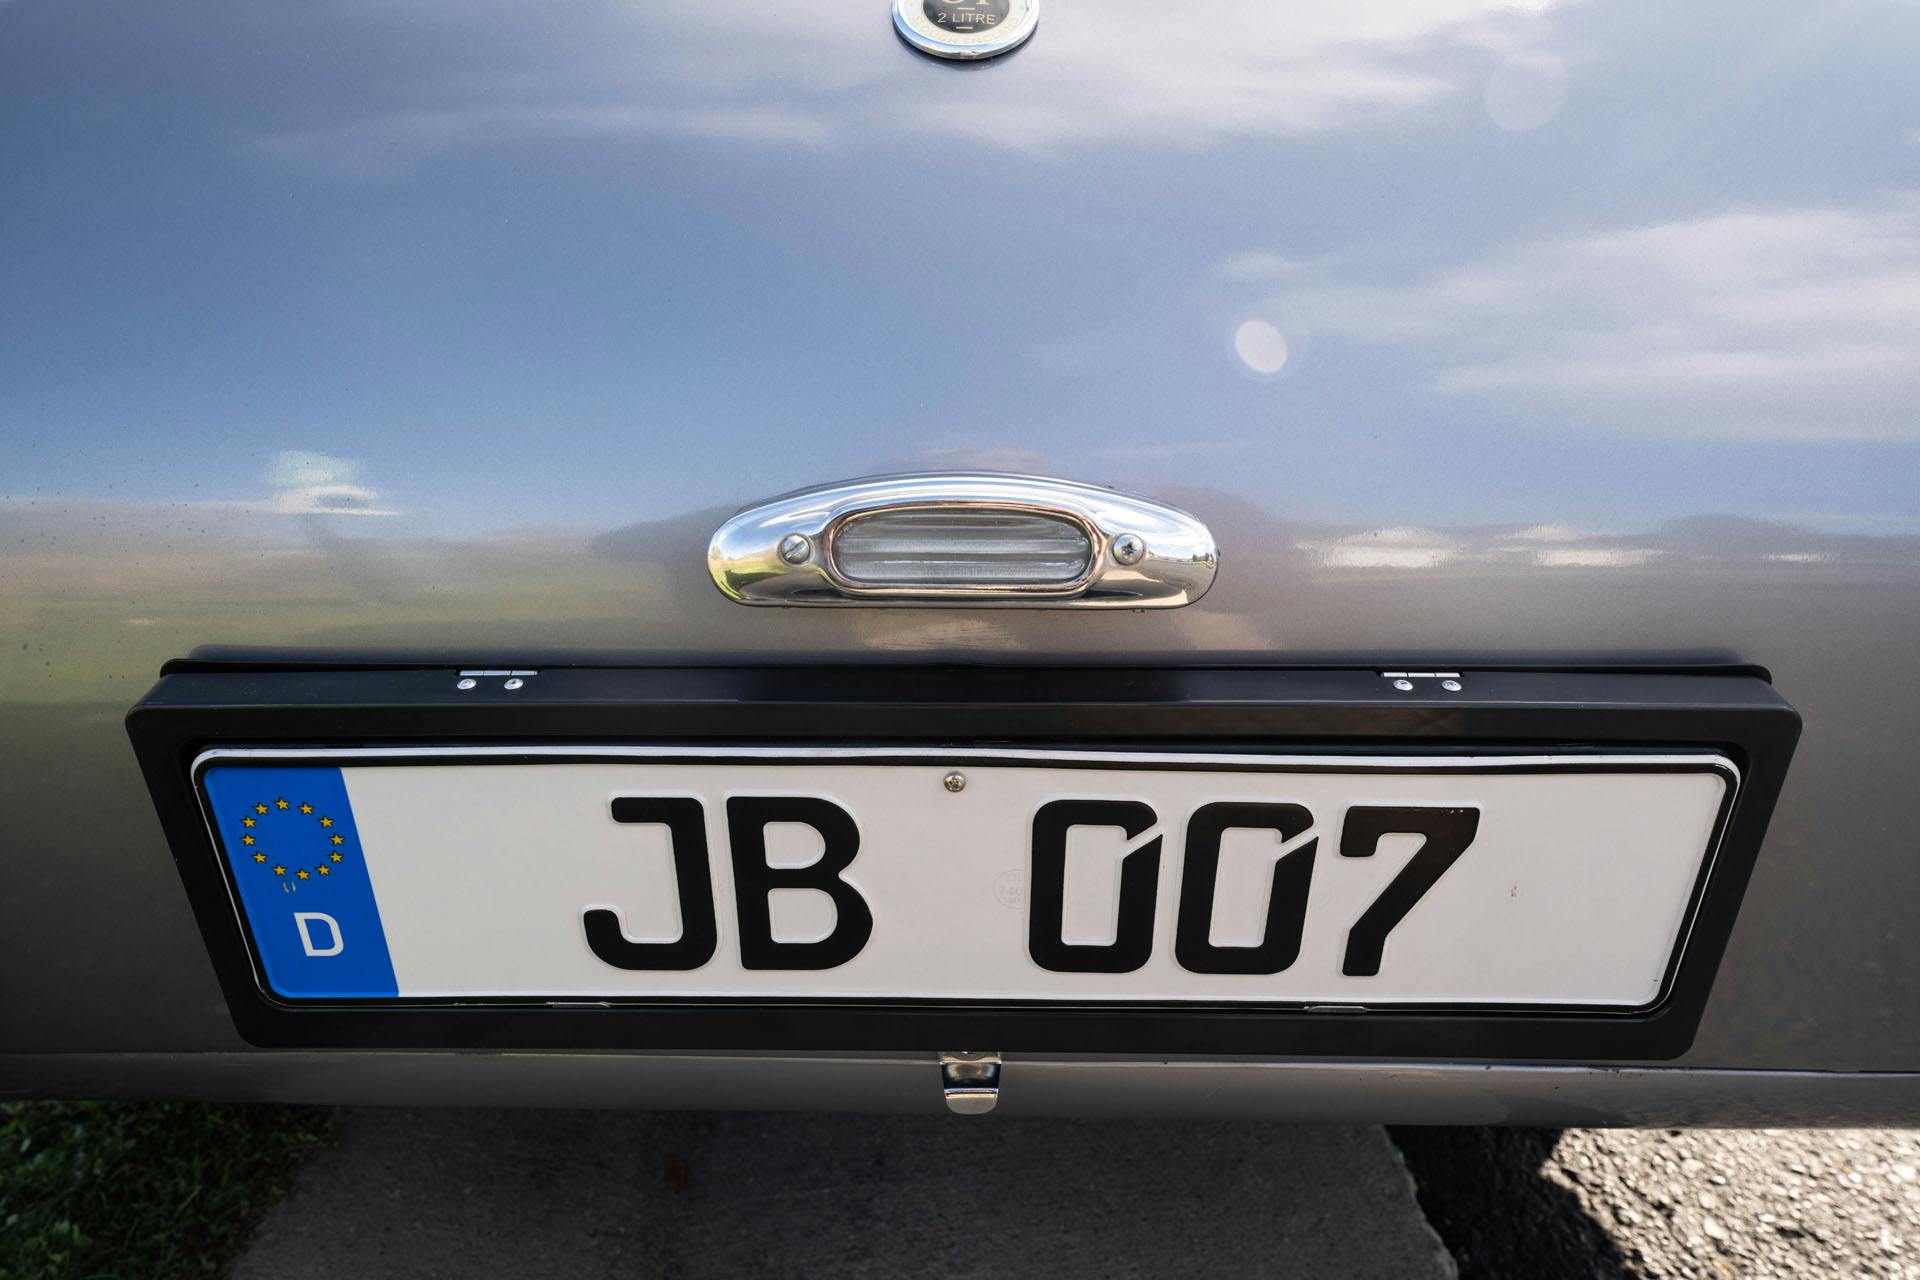 1959 Peerless GT Phase II JB 007 plate detail